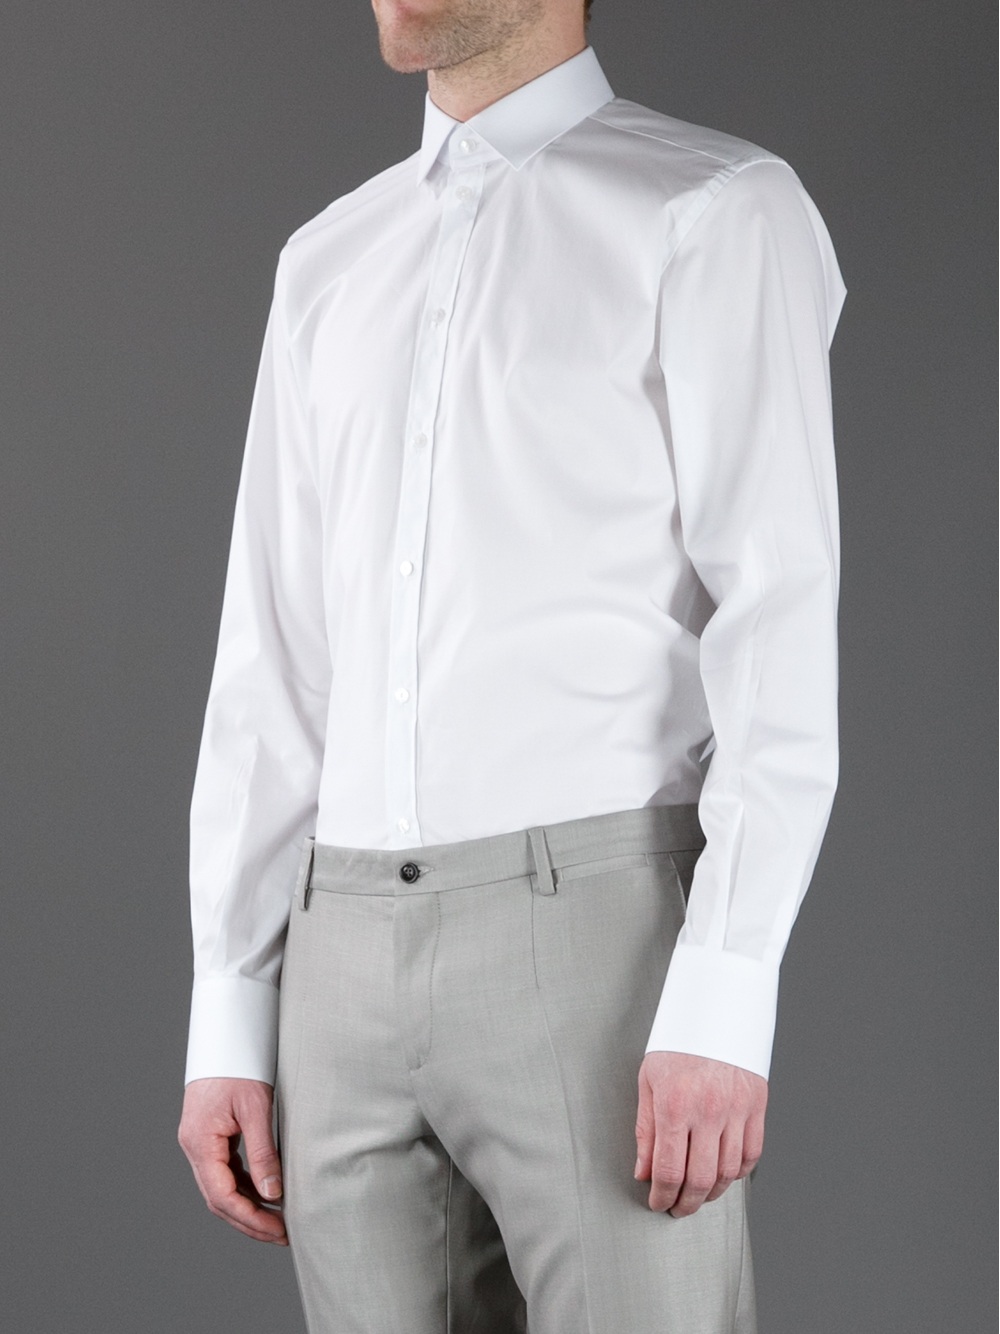 Dolce ☀ Gabbana Martini Shirt in White ...